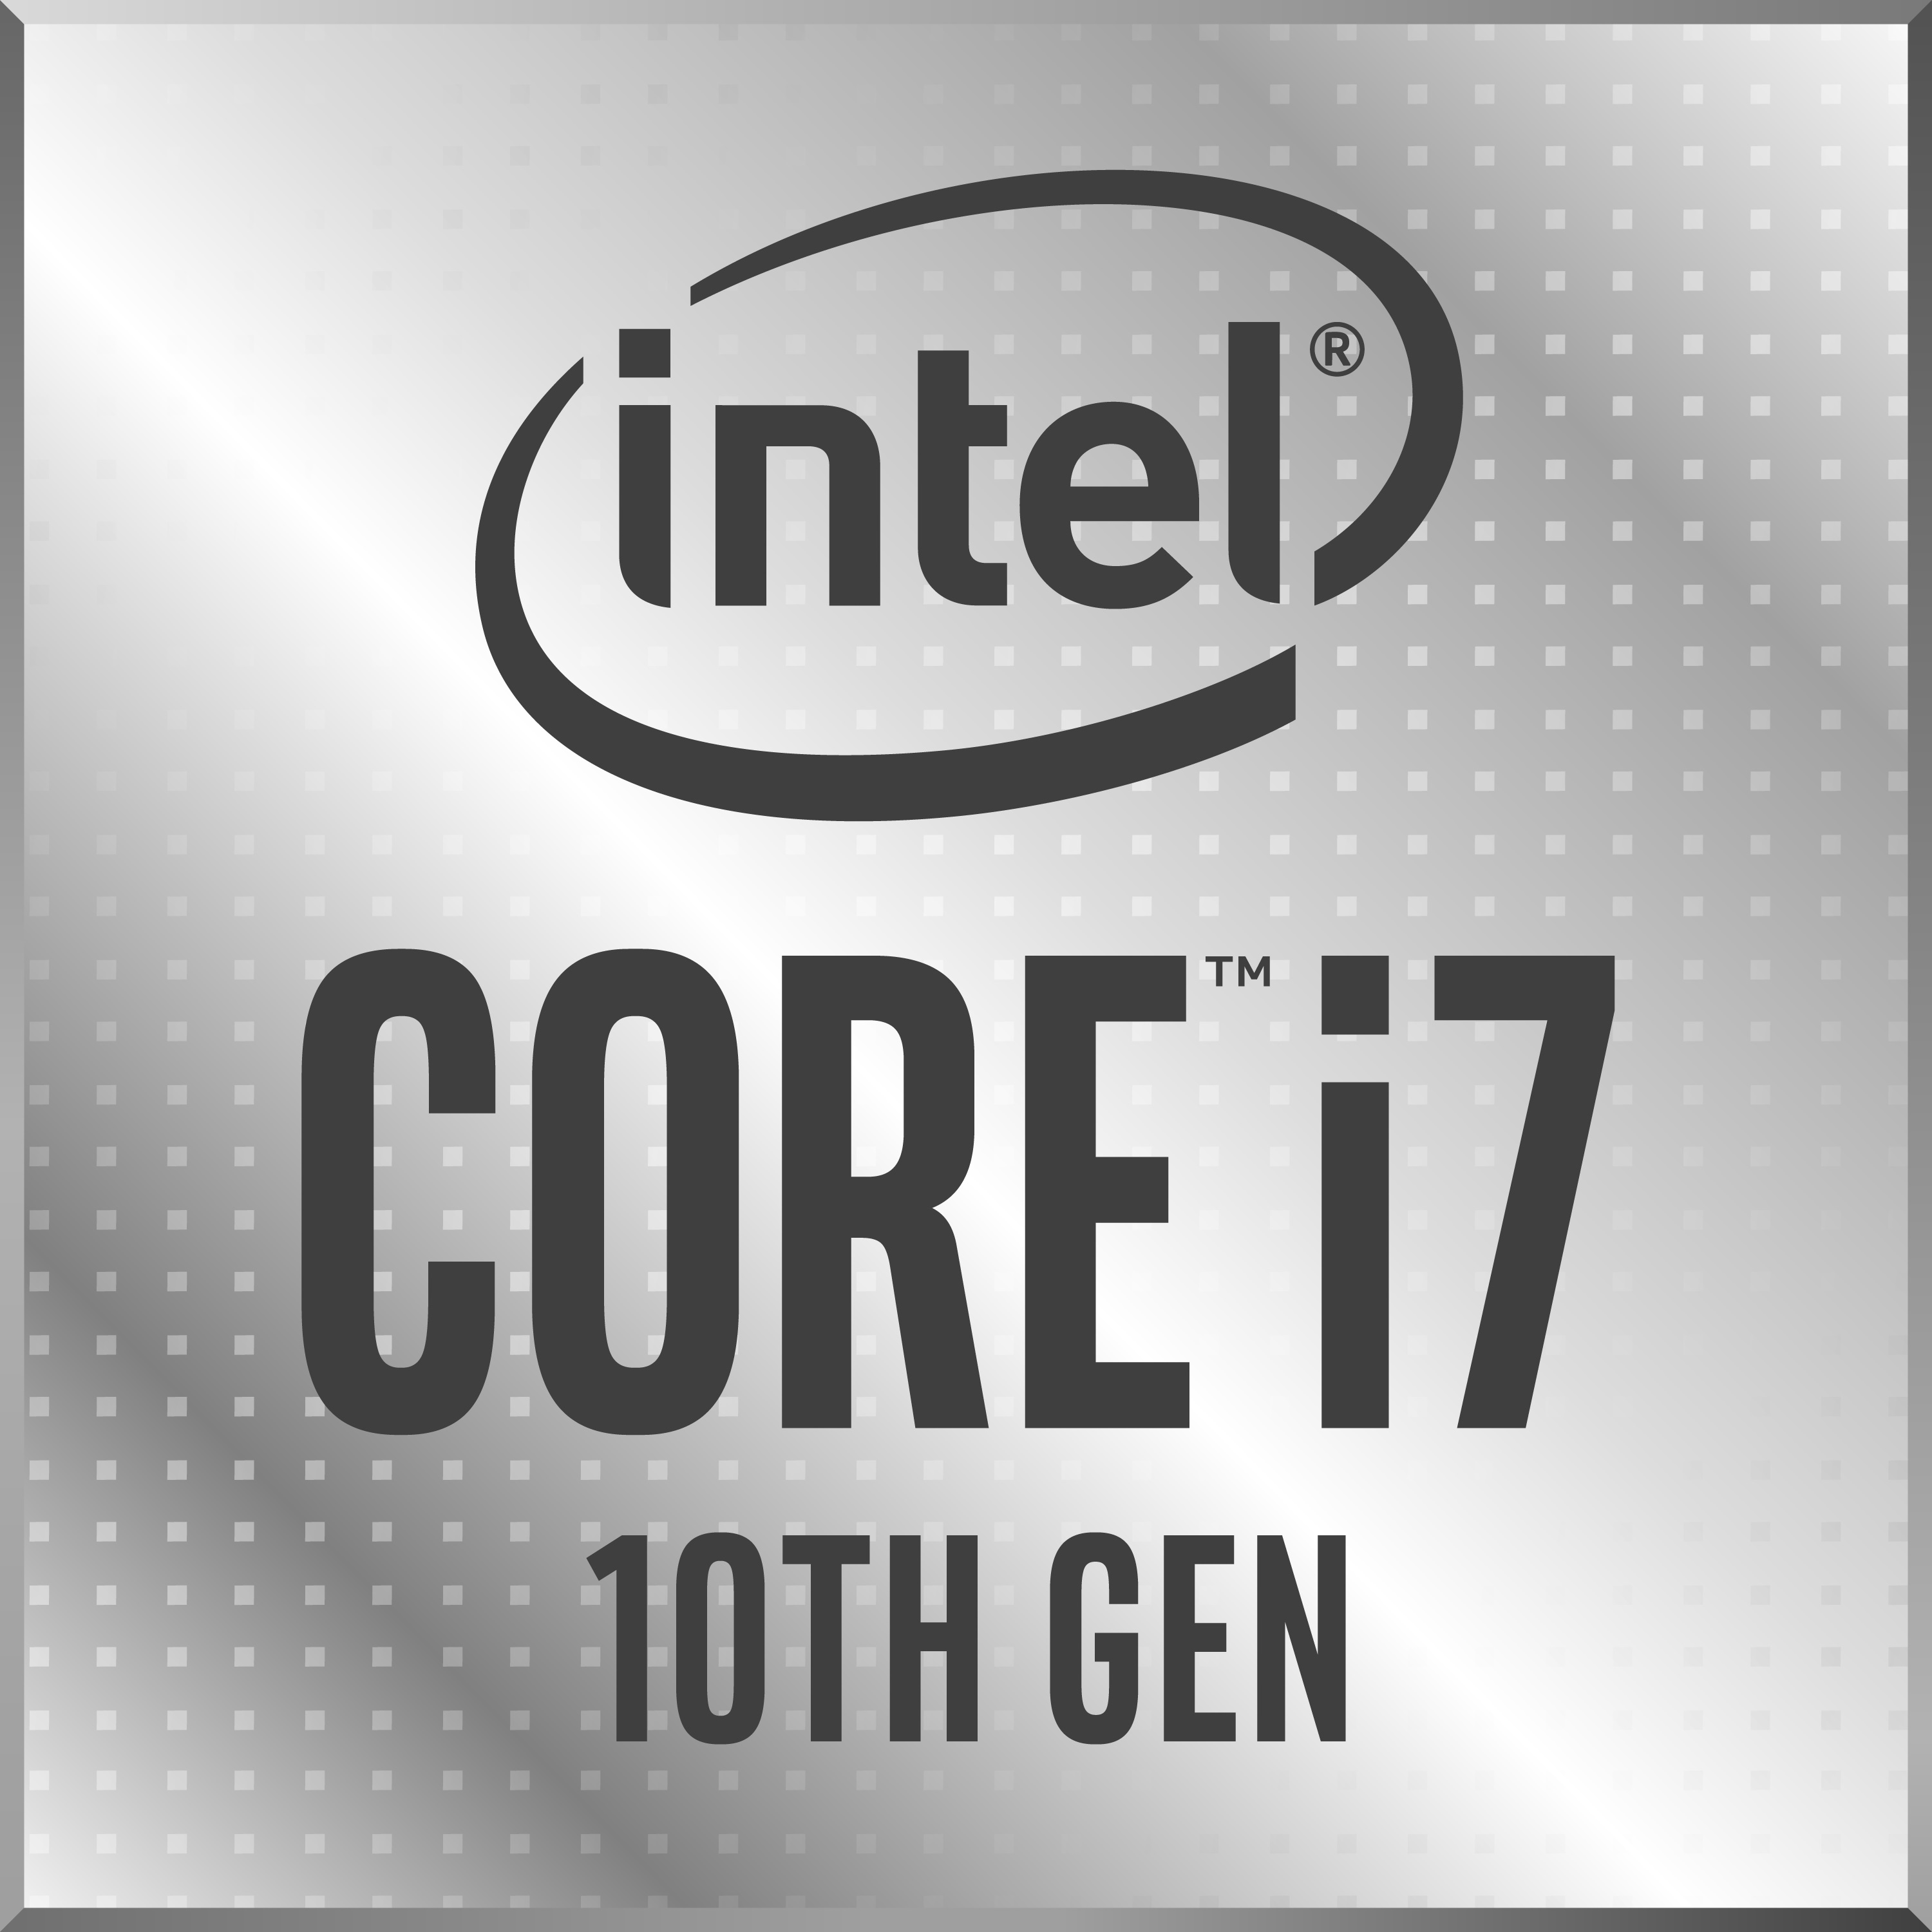 Intel Core i7-1065G7 Laptop Processor (Ice Lake) - NotebookCheck.net Tech